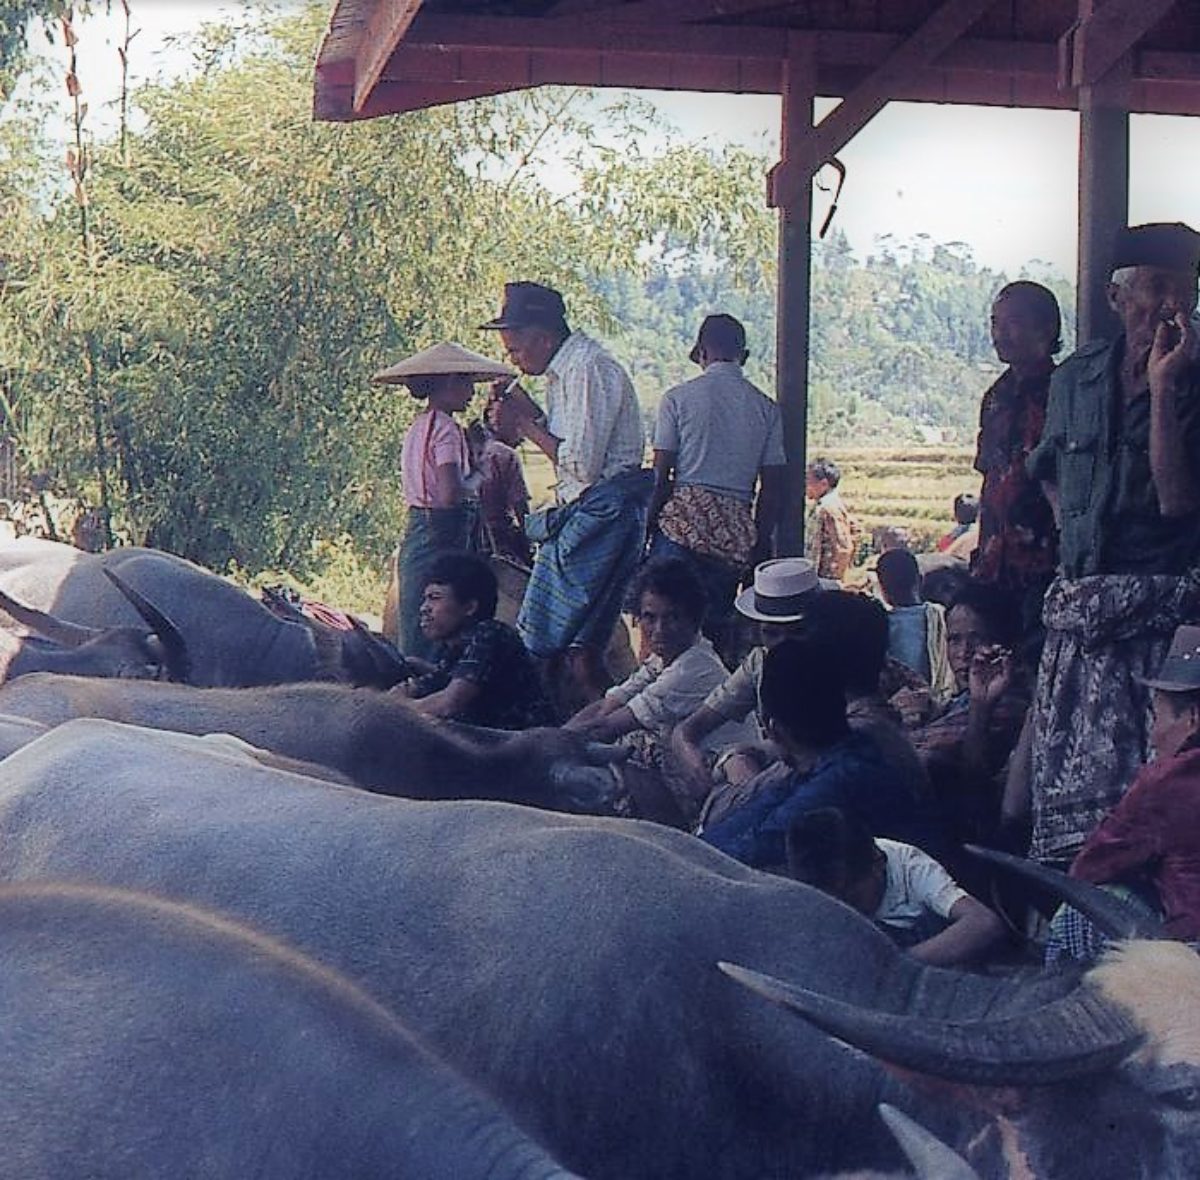 Nella cerimonia vengono sacrificati decine di bufali d’acqua e le carni distribuite agli ospiti . Per la famiglia del defunto è una spesa ingente che deve essere affrontata .